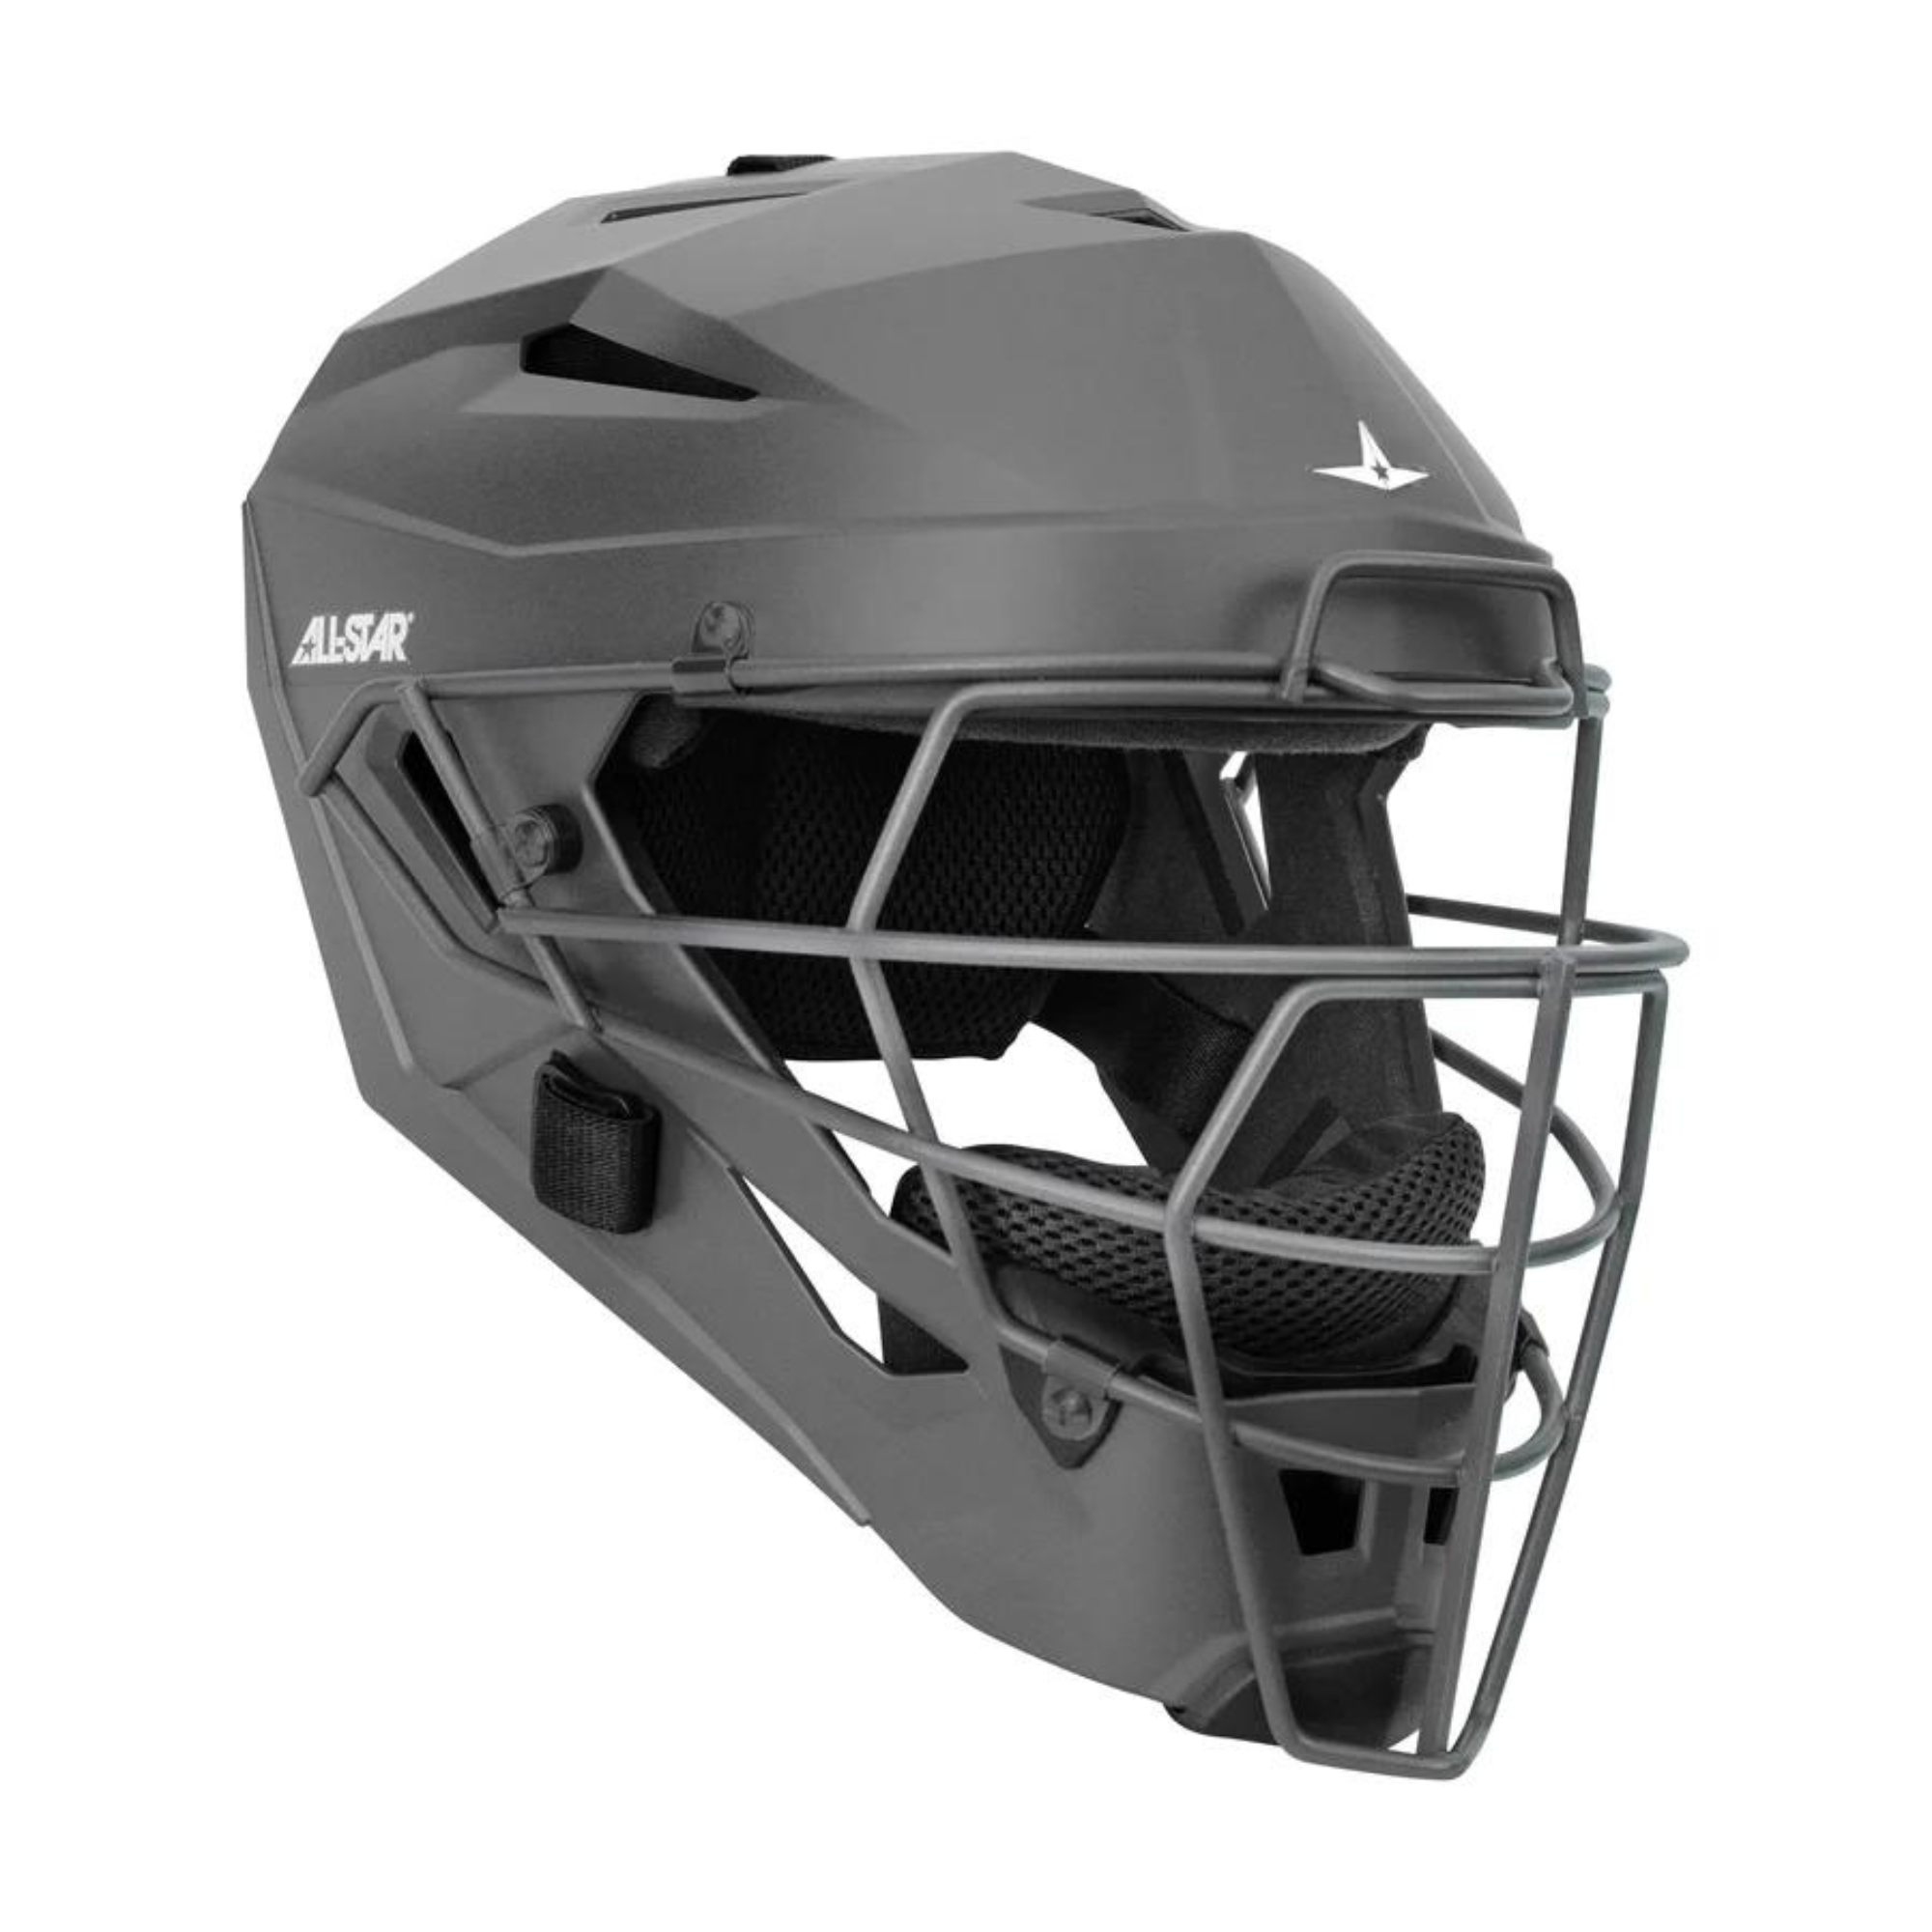 All-Star Adult MVP PRO Catcher's Helmet w/ Deflexion Tech - Matte